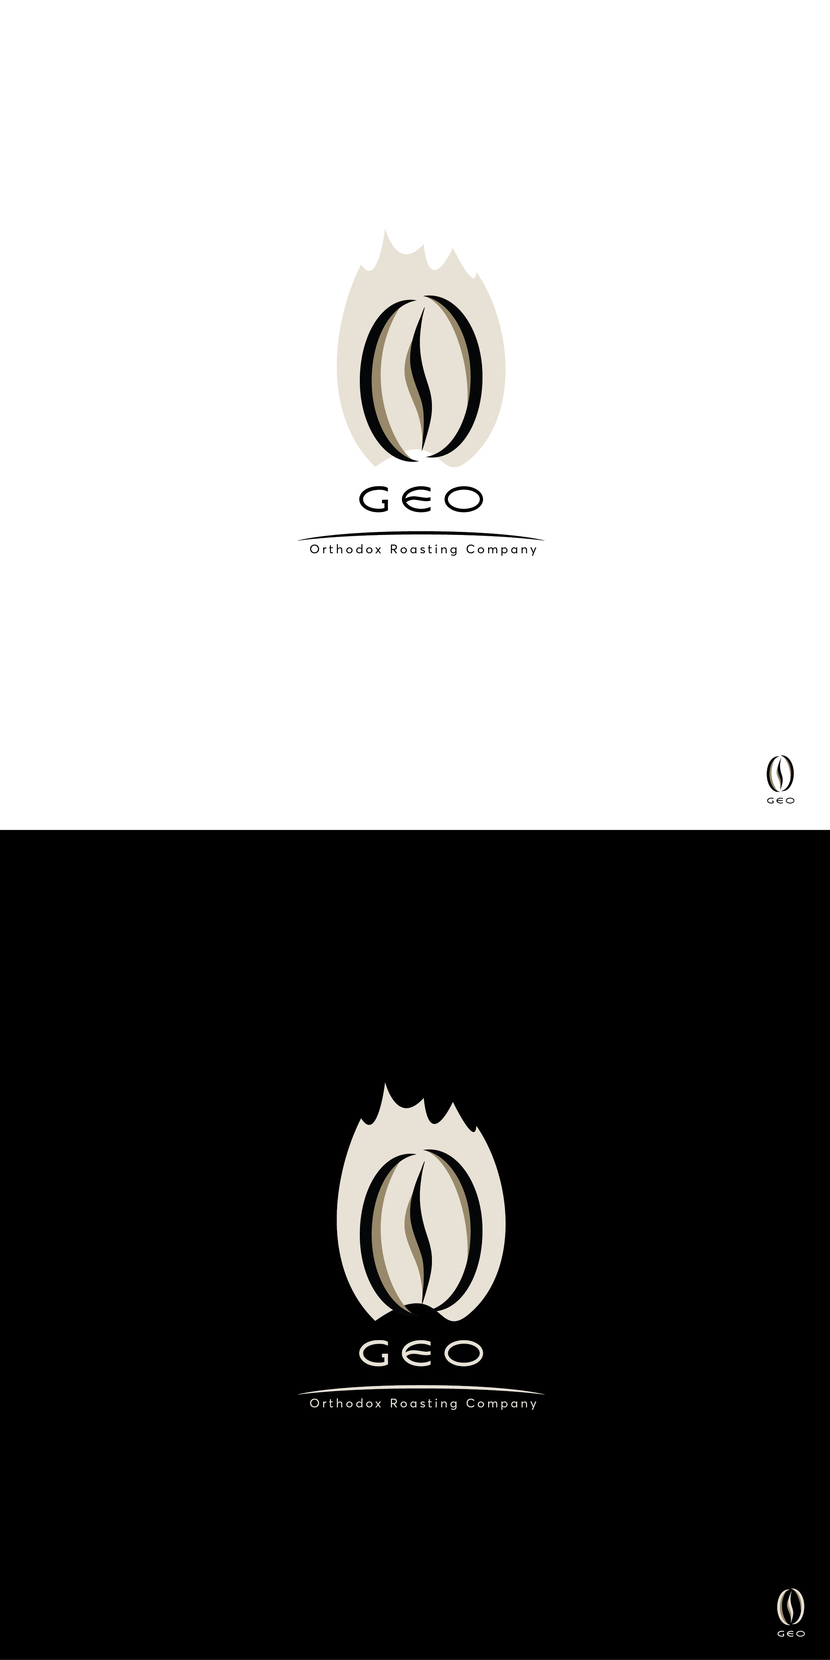 Вариант логотипа GEO с тенями. - Логотип для кофейной компании